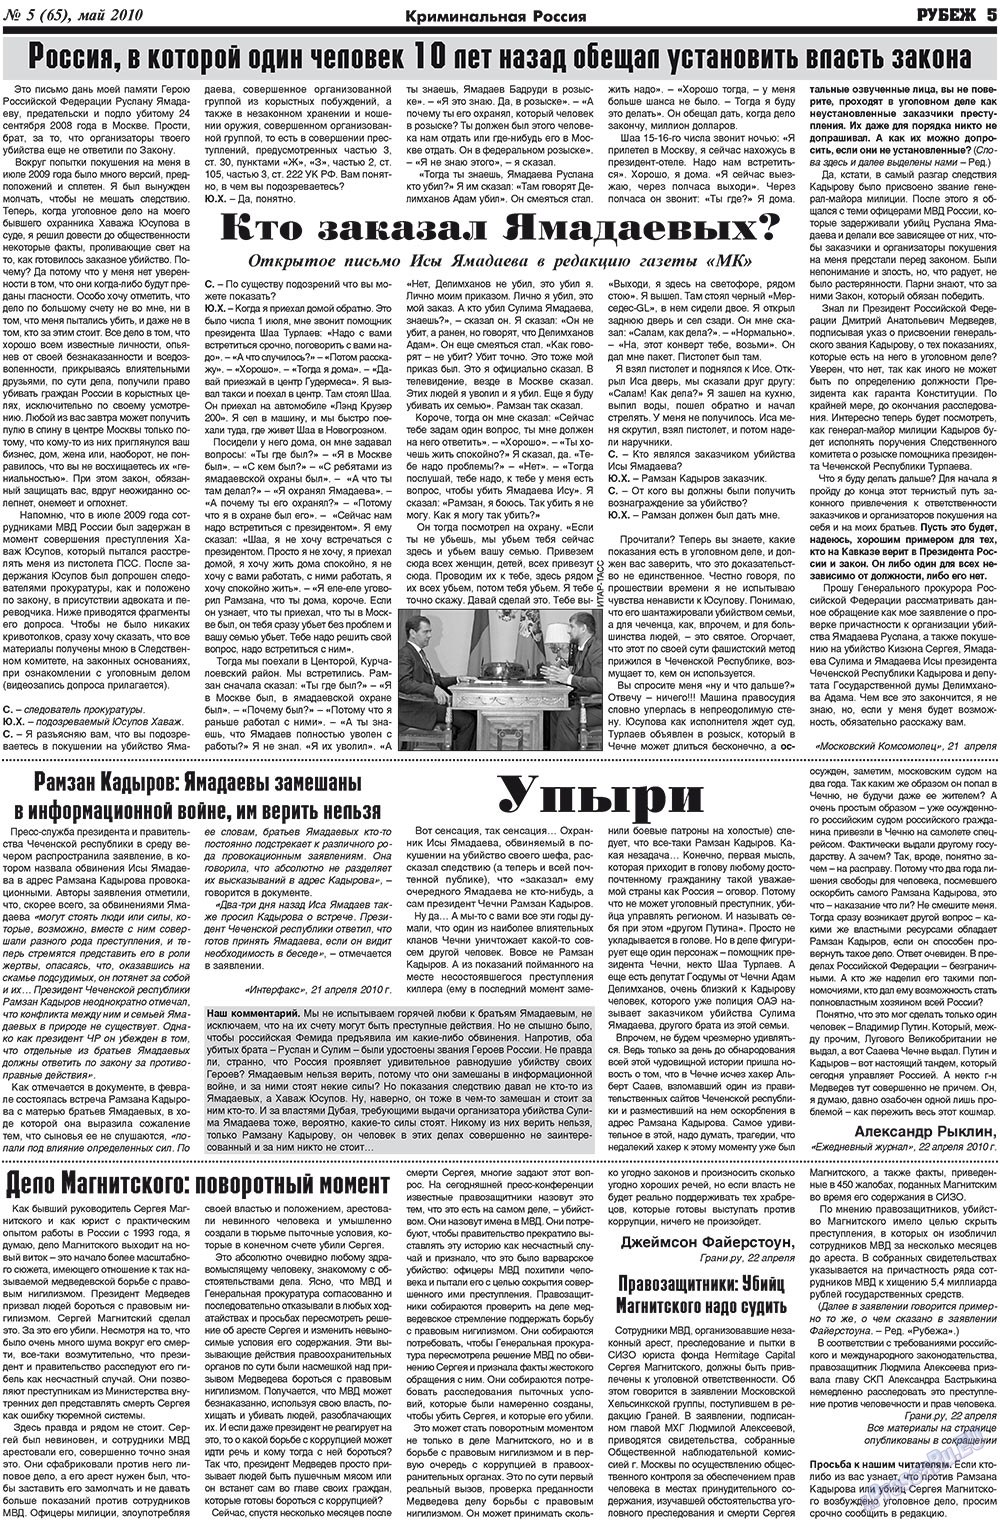 Рубеж (газета). 2010 год, номер 5, стр. 5